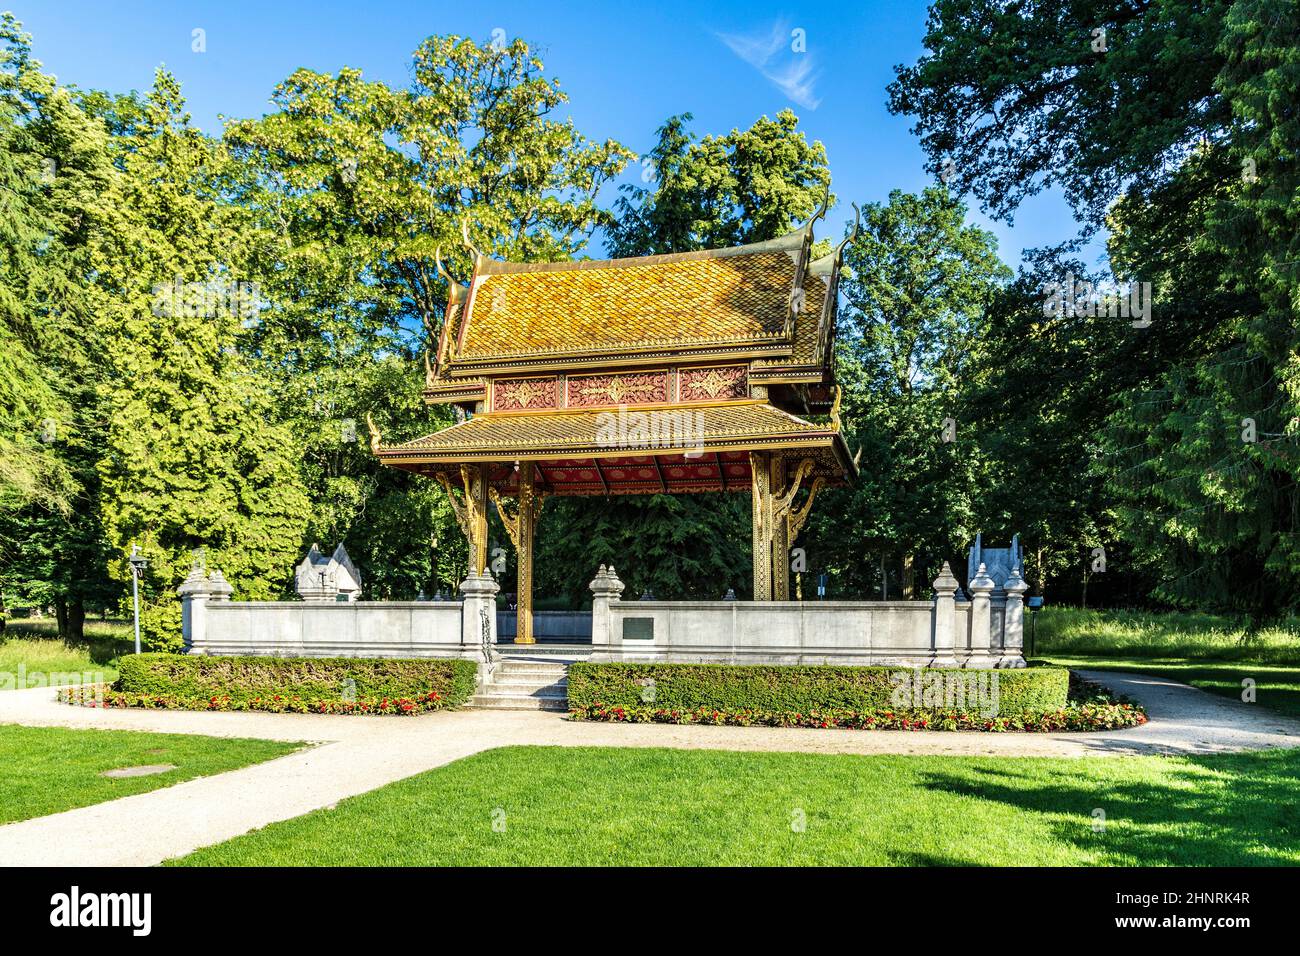 El templo tailandés salo en el parque de Bad Homburg Foto de stock